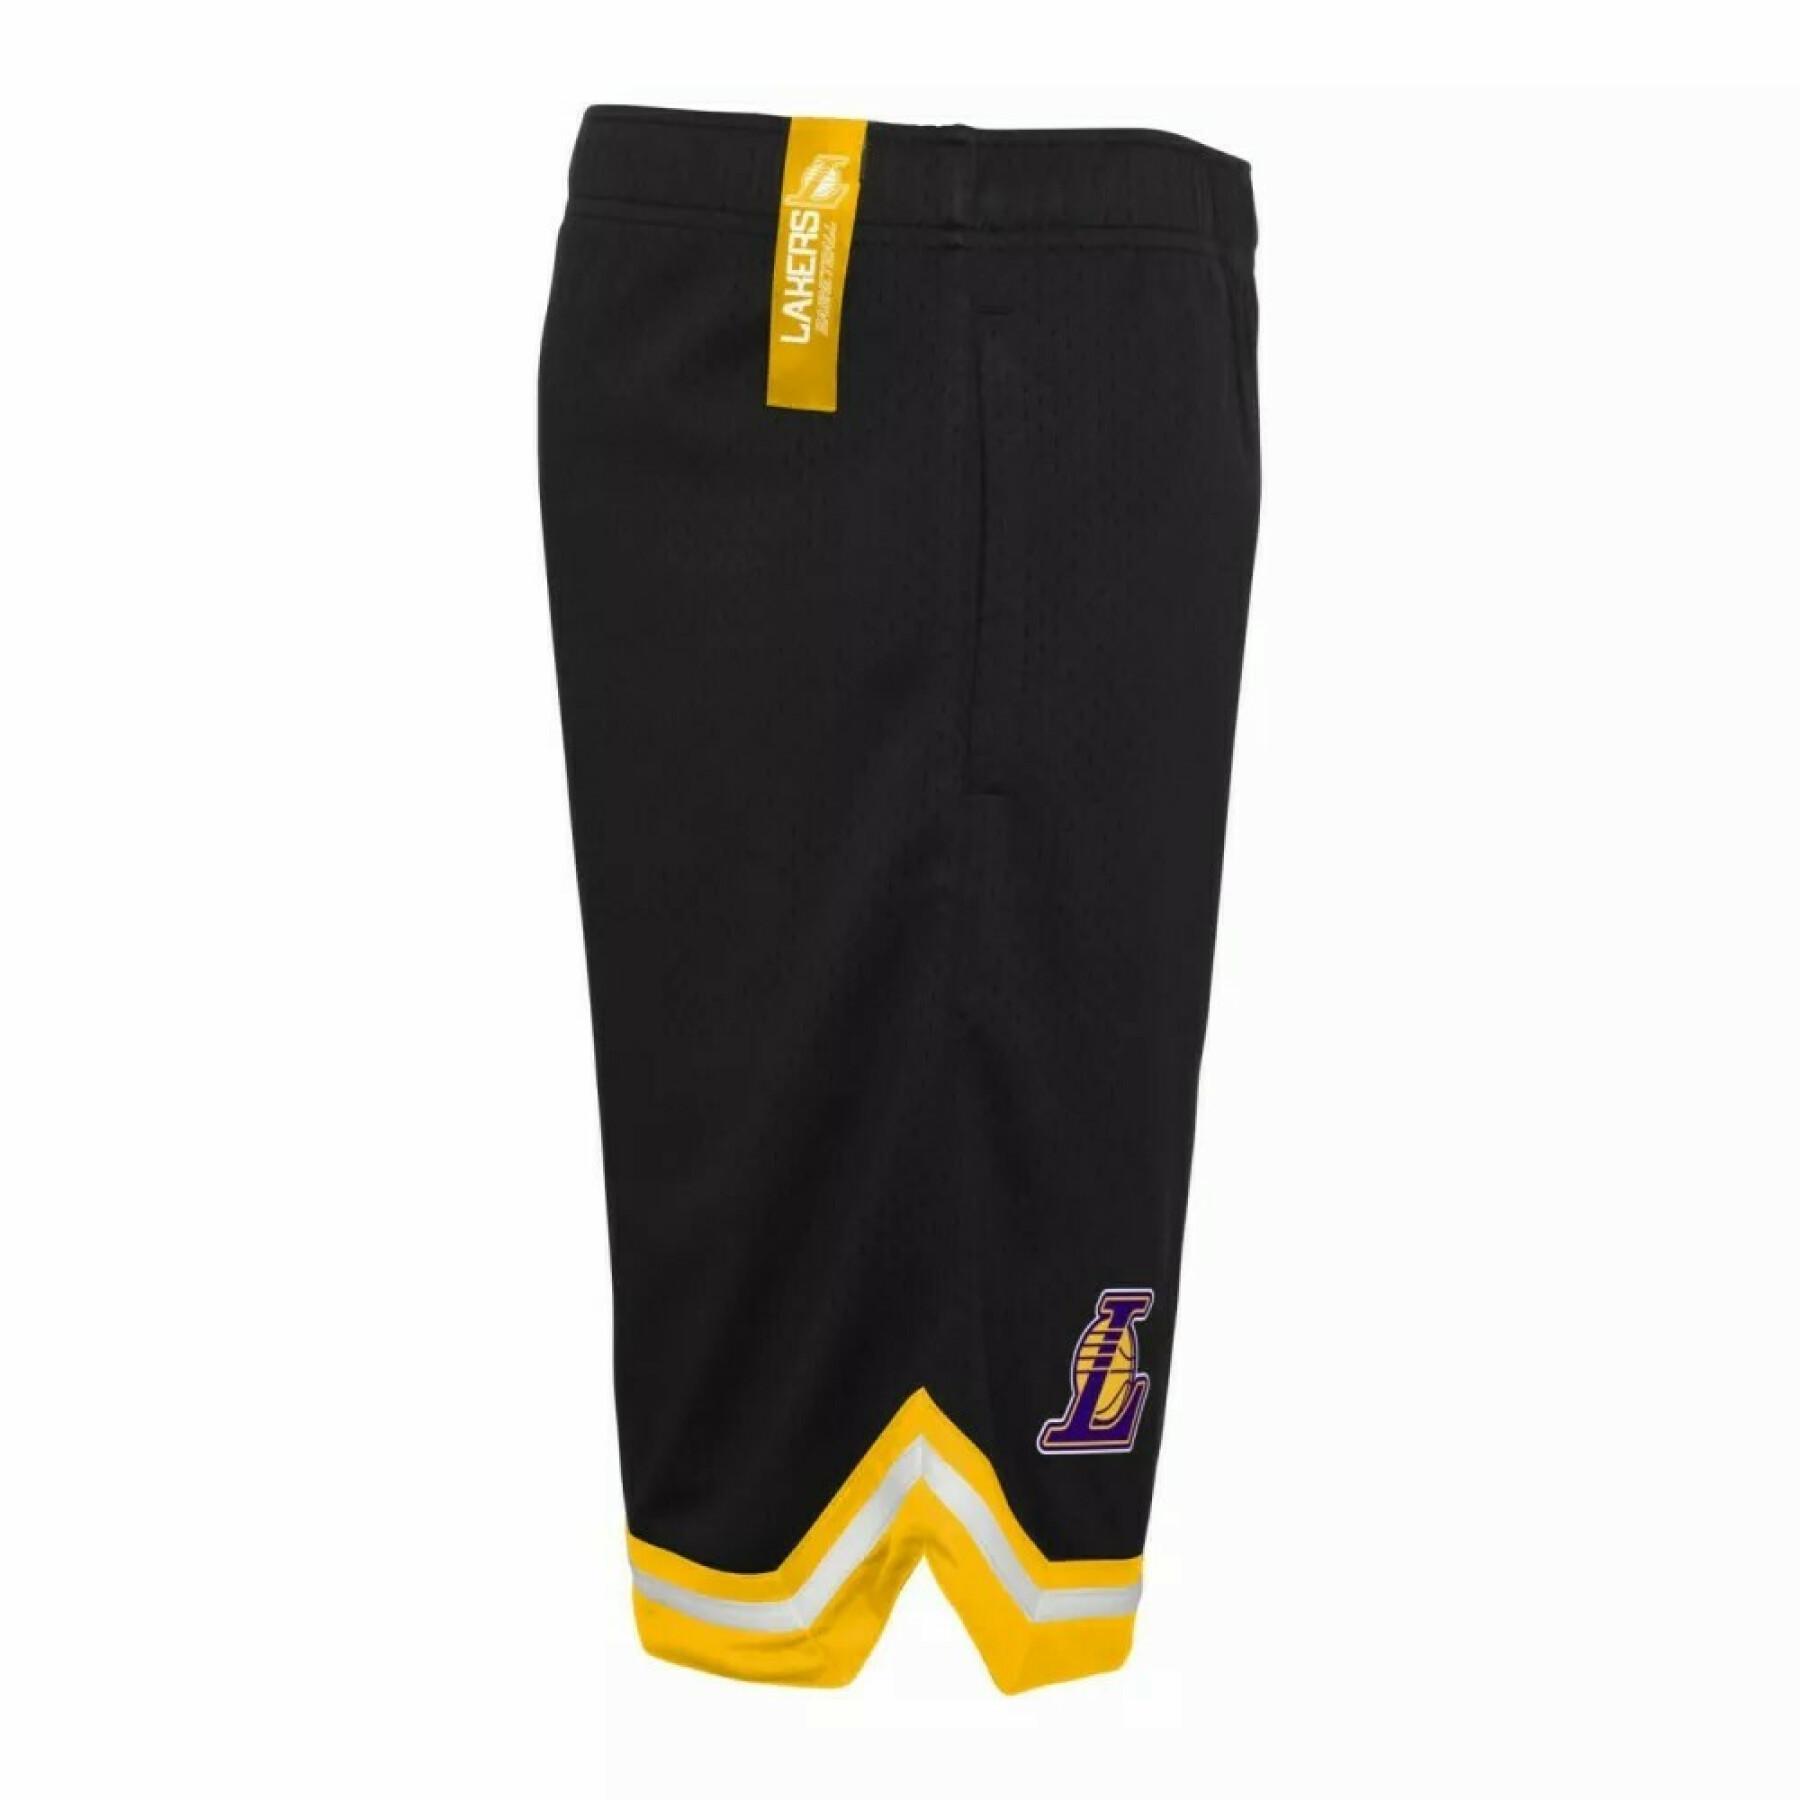 Kinder shorts Los Angeles Lakers Baller Mesh